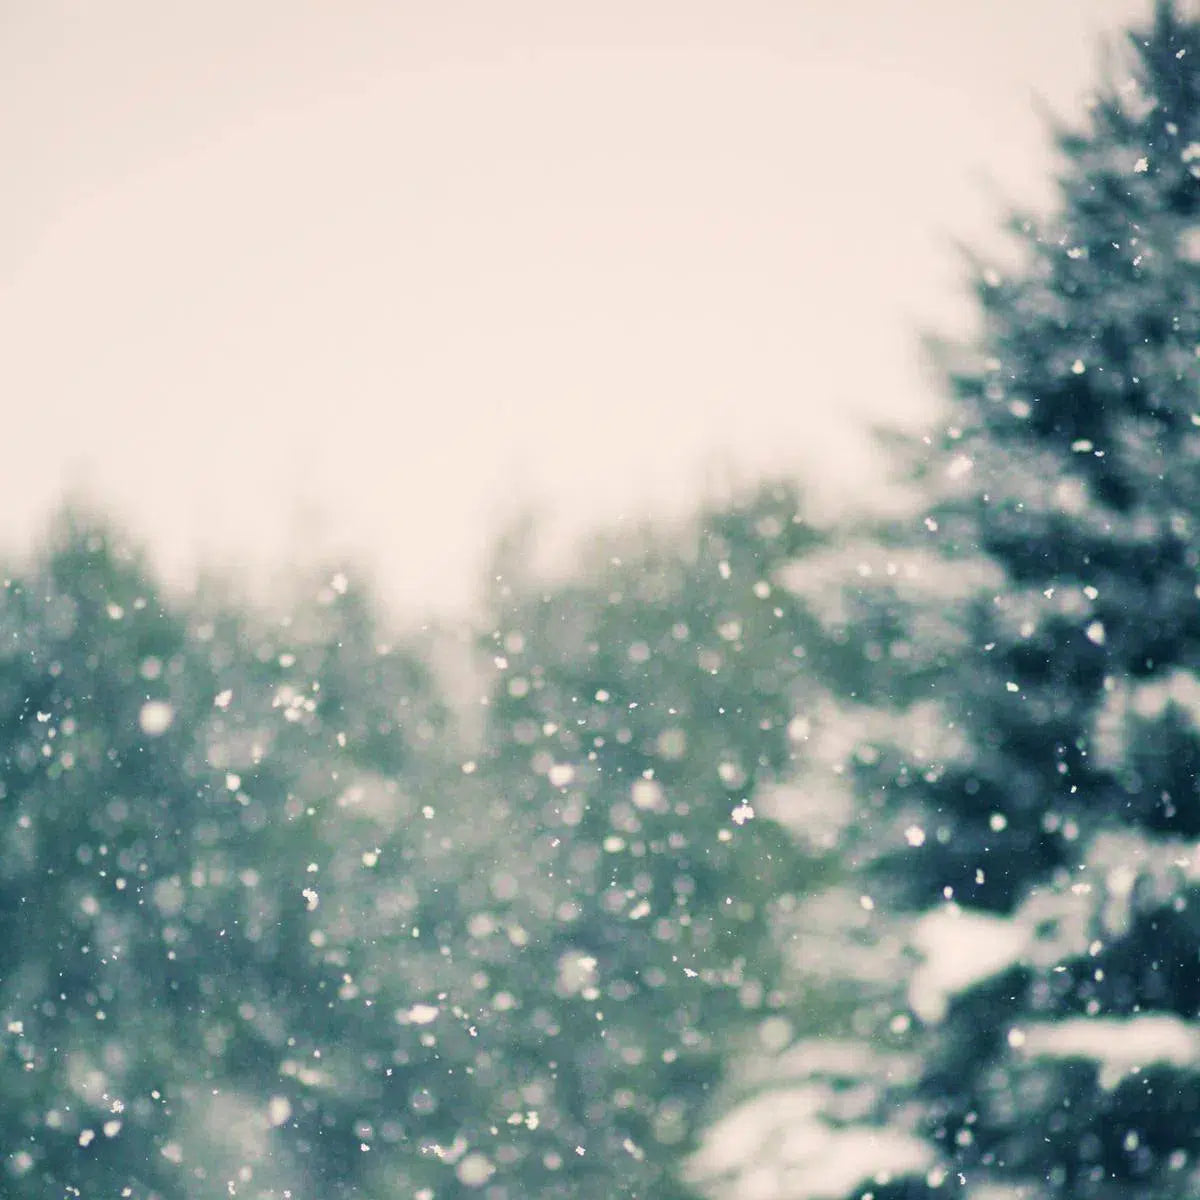 Winter Daydream #1, by Alicia Bock-PurePhoto